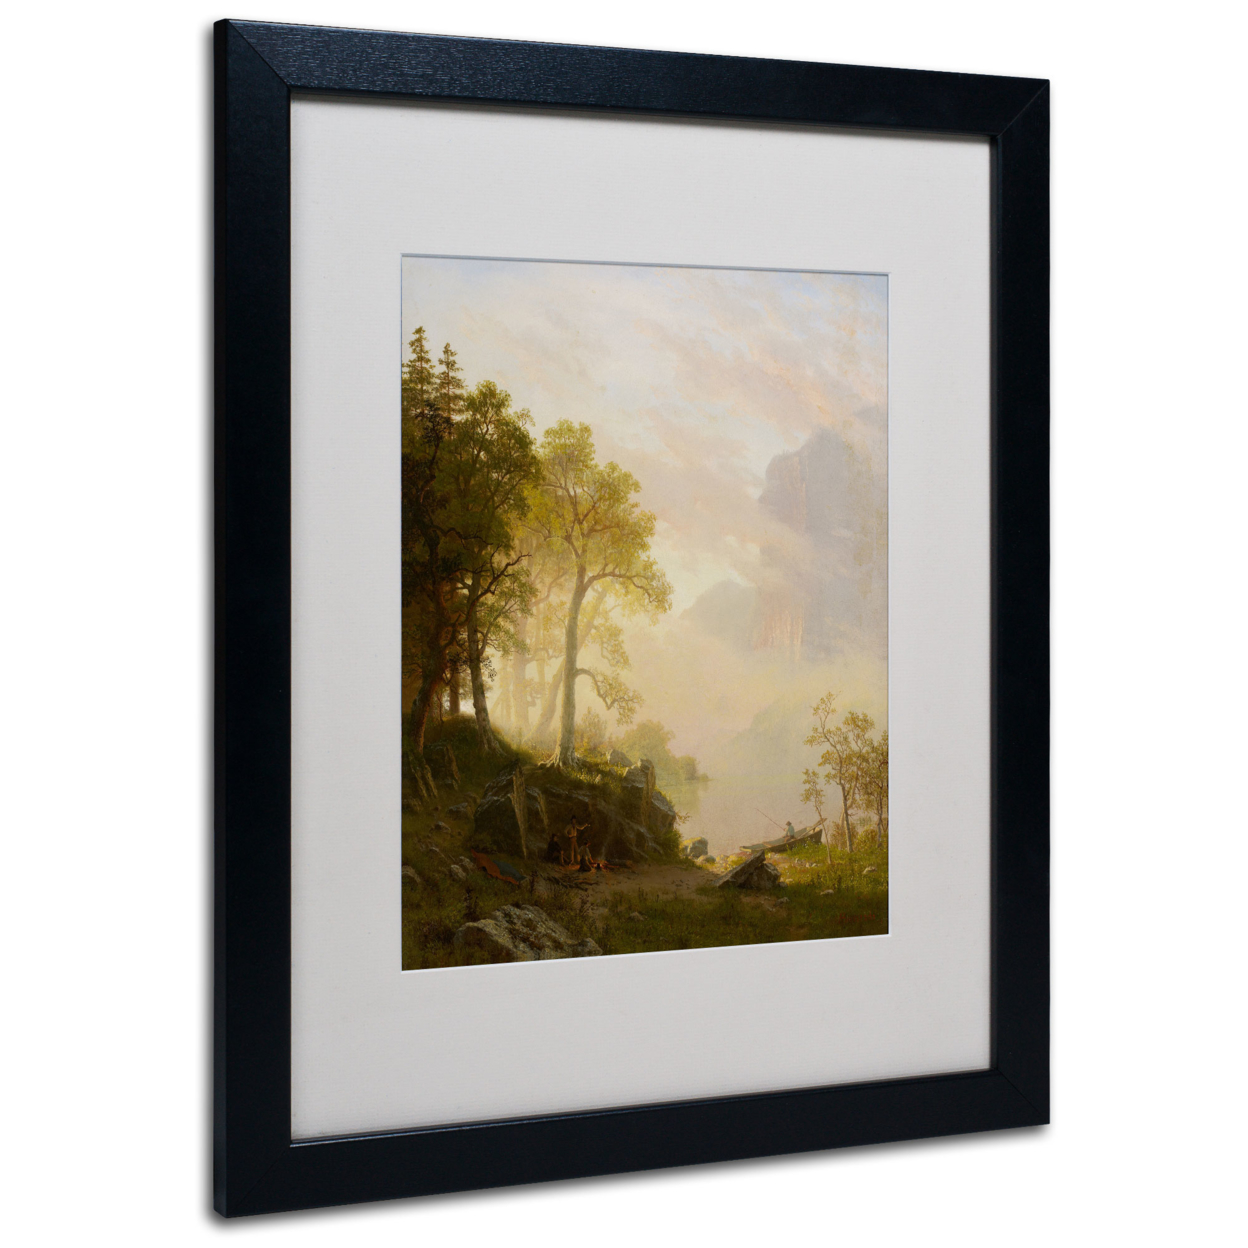 Albert Bierstadt 'The Merced River' Black Wooden Framed Art 18 X 22 Inches